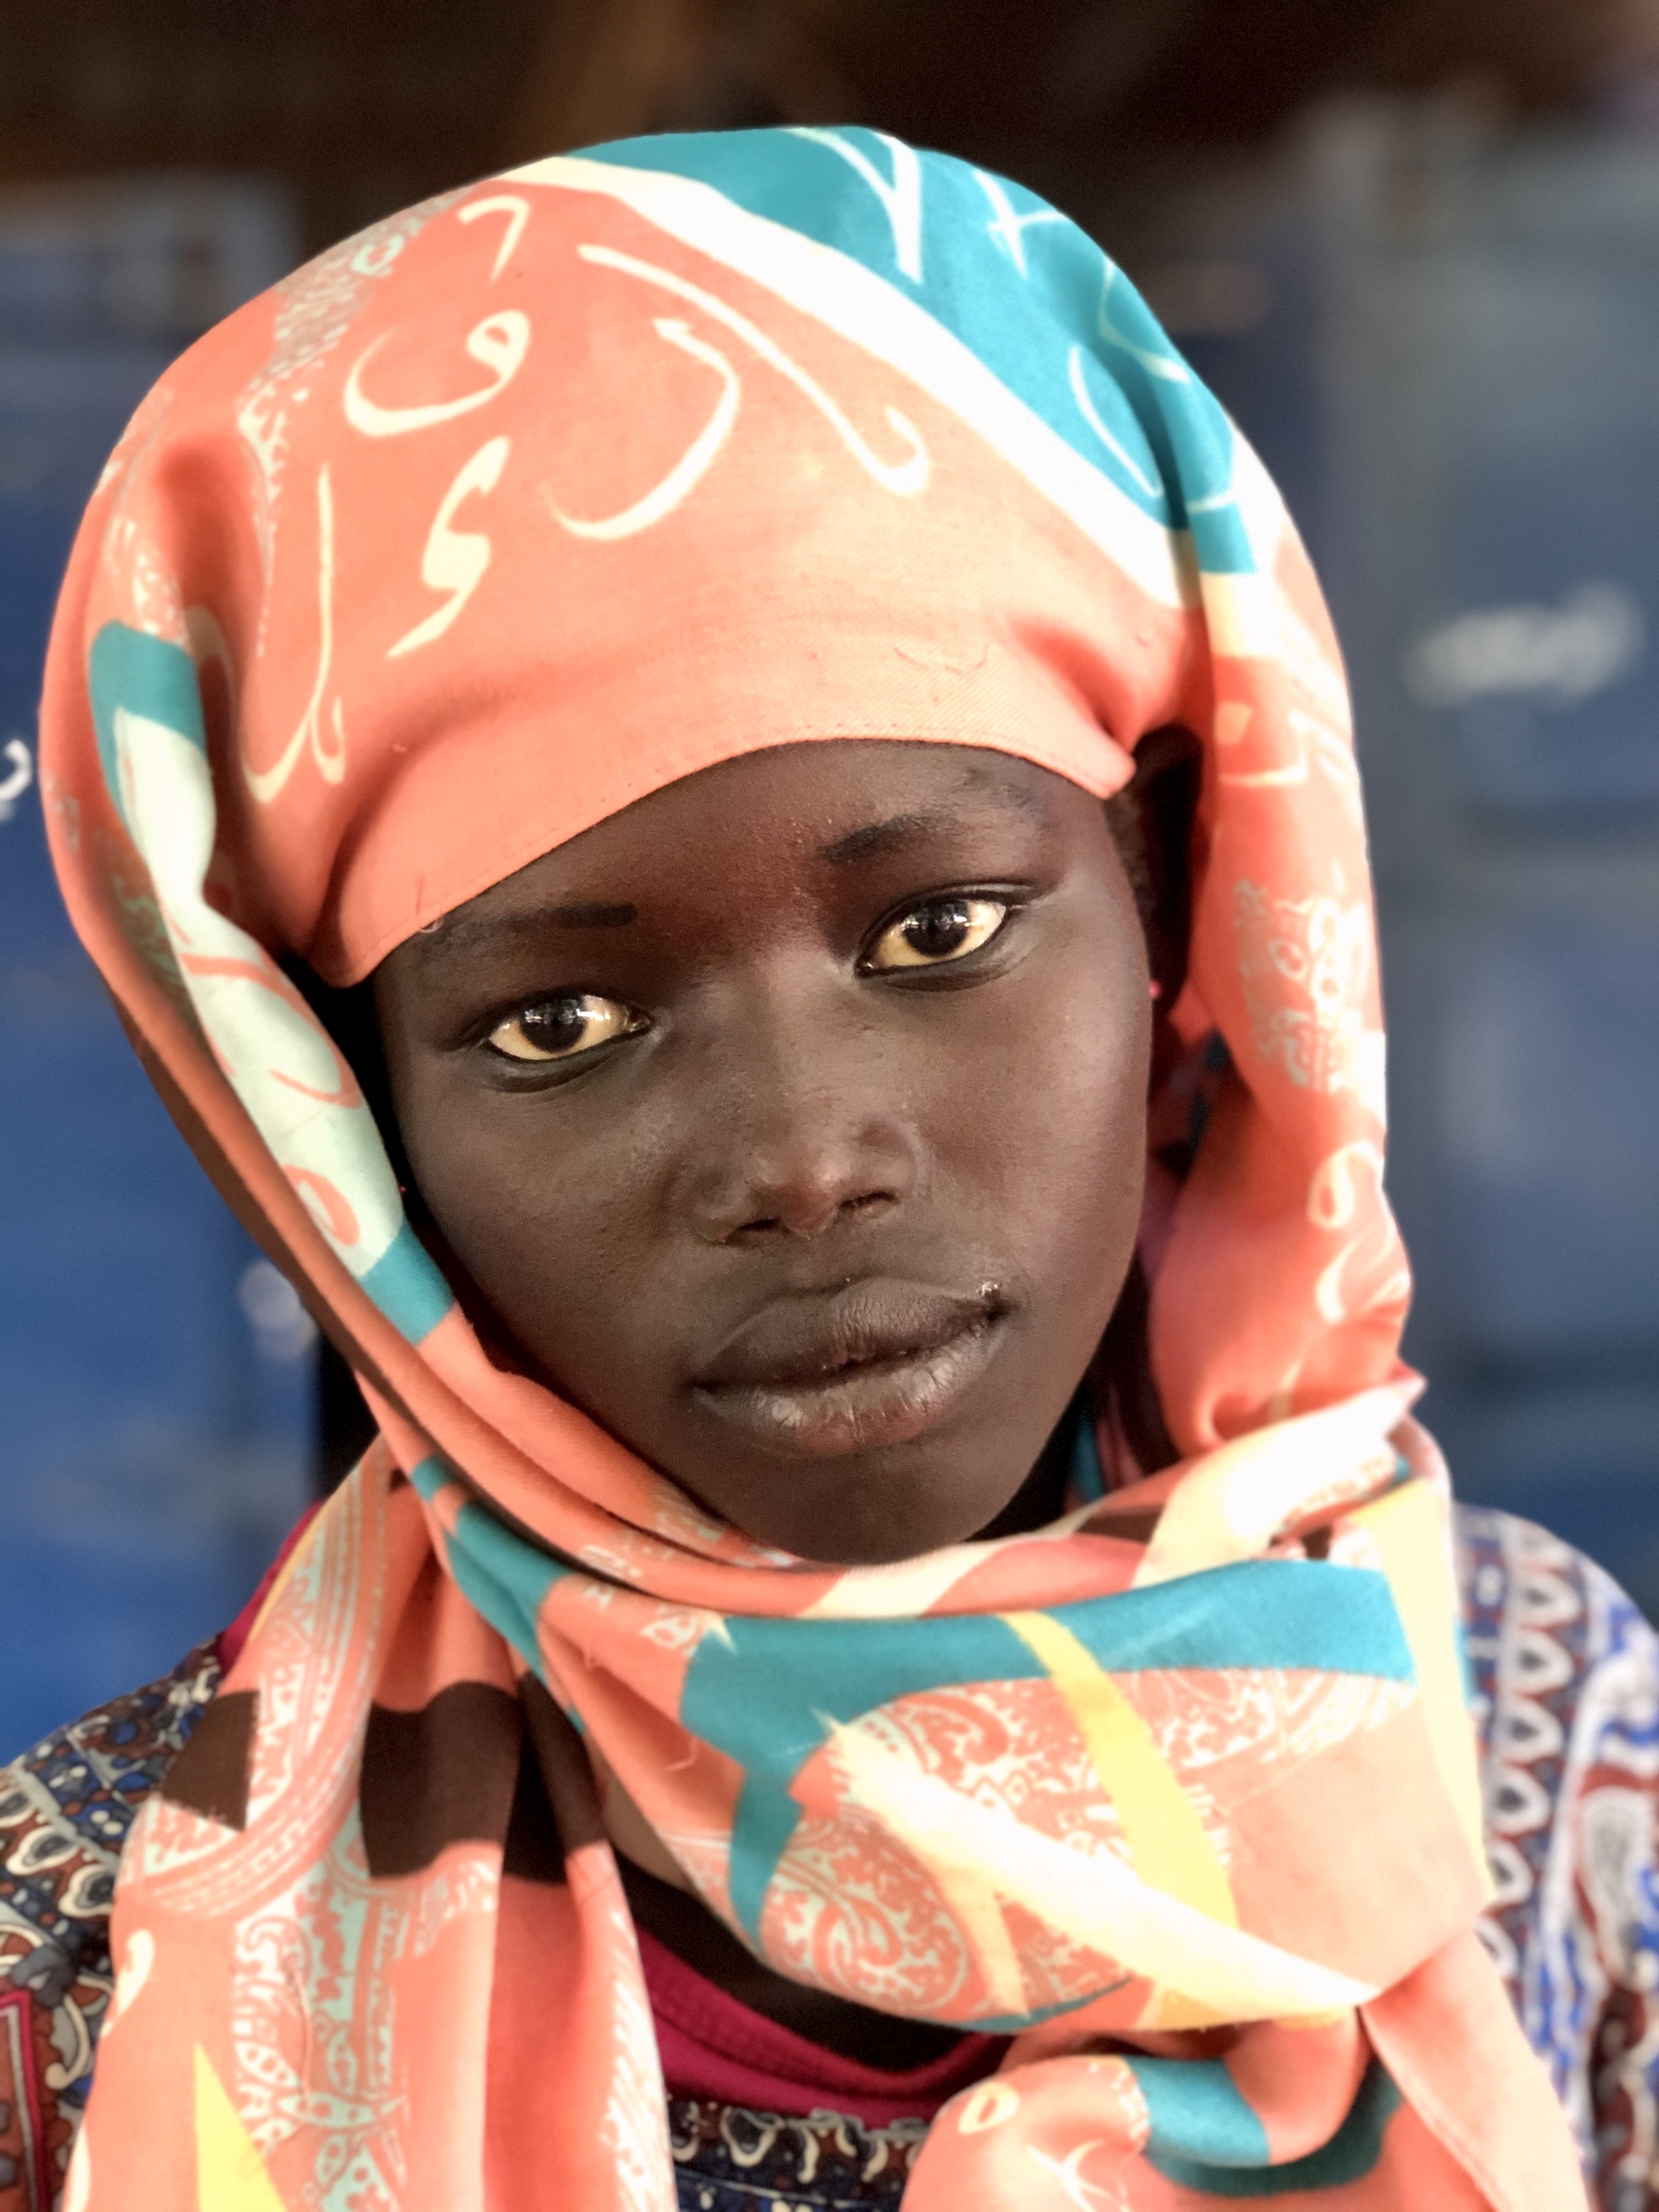 Zdjęcie zostało wykonane w miejscowości Soba w Sudanie. Autorem zdjęcia jest pan dr hab, Maciej Kurcz, prof. UJ. Na zdjęciu ukazana jest głowa kobiety - dziewczynki o czarnym kolorze skóry. Twarz jest młoda, lekko uśmiechnięta, jakby zamyślona. Dziewczyna ma spokojne oczy ciemnobrązowe, drobny nos i stosunkowo pełne usta również jak cala twarz brązowe. Na głowie dziewczyna ma kolorowy turban, który obejmuje głowę i spada luźno na barki wiązanie. Turban jest zasadniczo w kolorach łososiowo- błękitnym ze wzorem z liter alfabetu arabskiego. Tło zdjęcia jest ciemno-niebiesko szare..